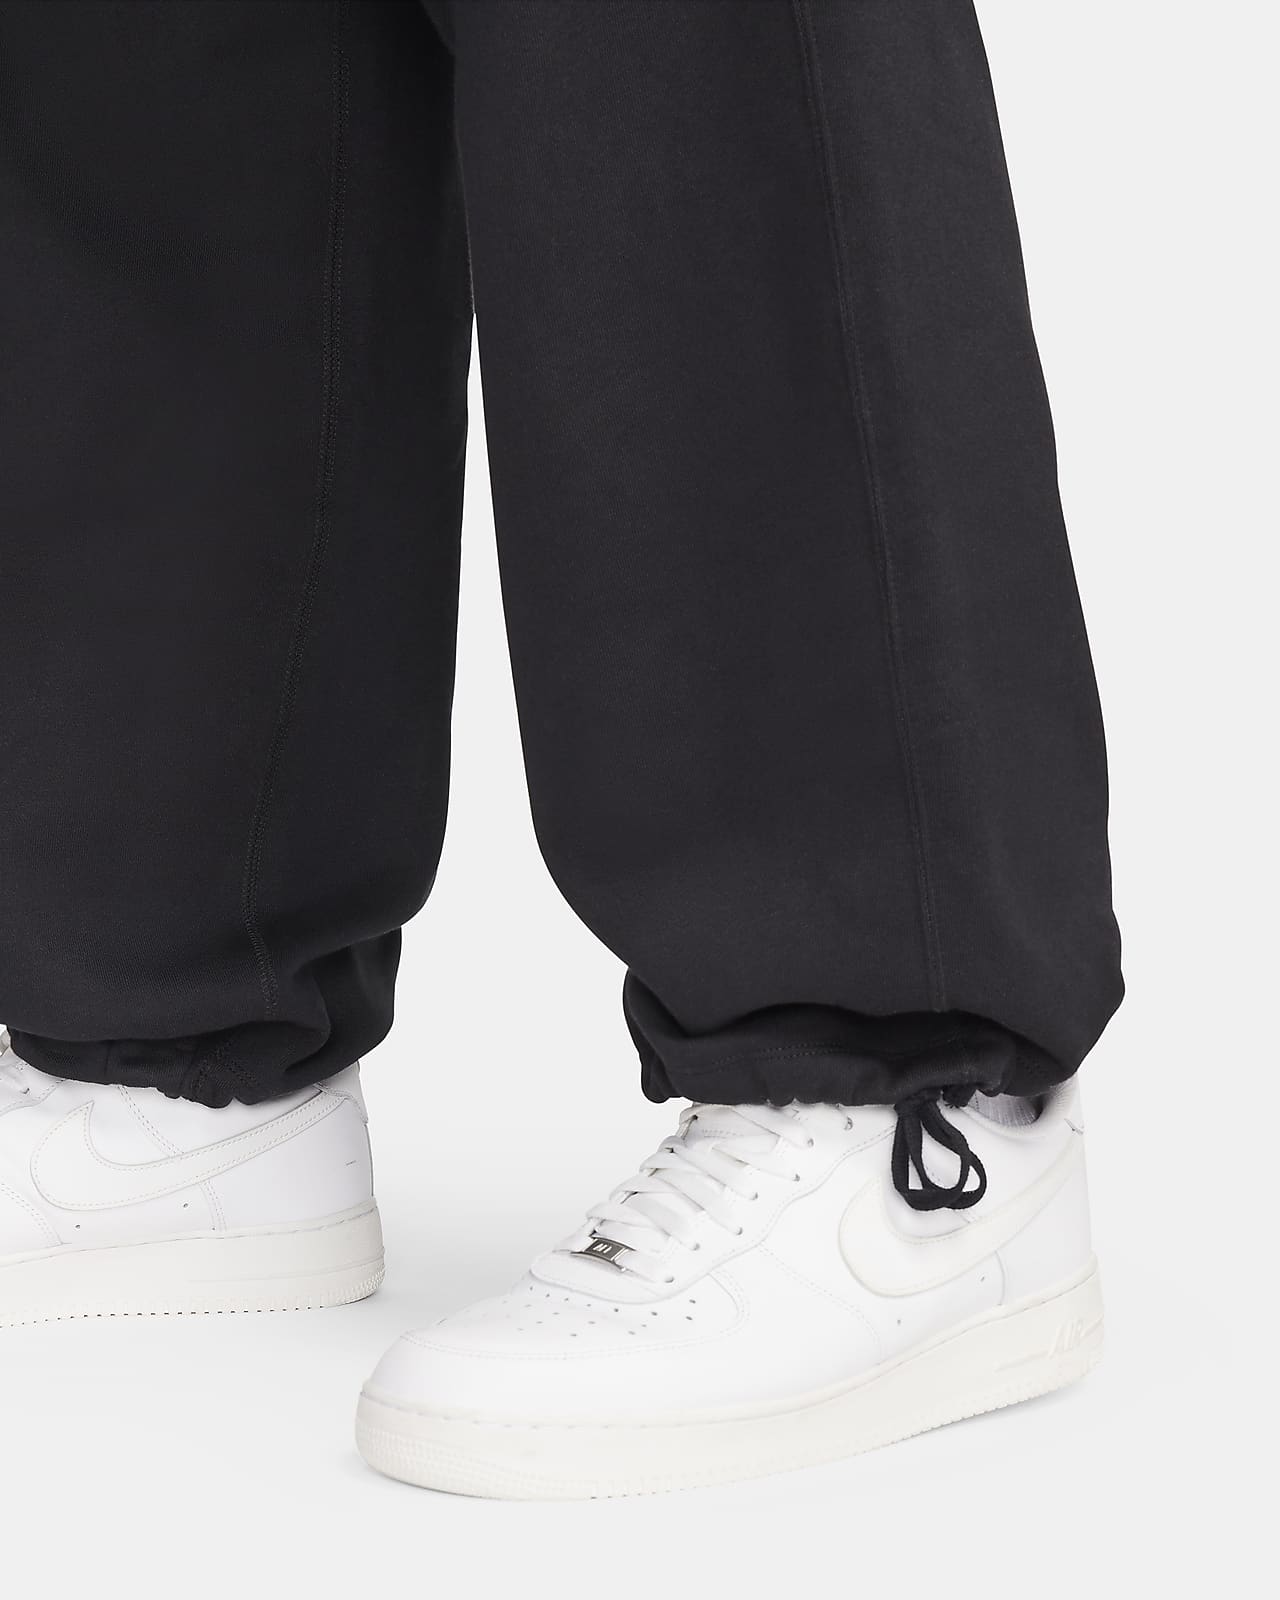 Jogger Pants Nike Solo Swoosh Men's Open-Hem Brushed-Back Fleece Pants  Black/ White